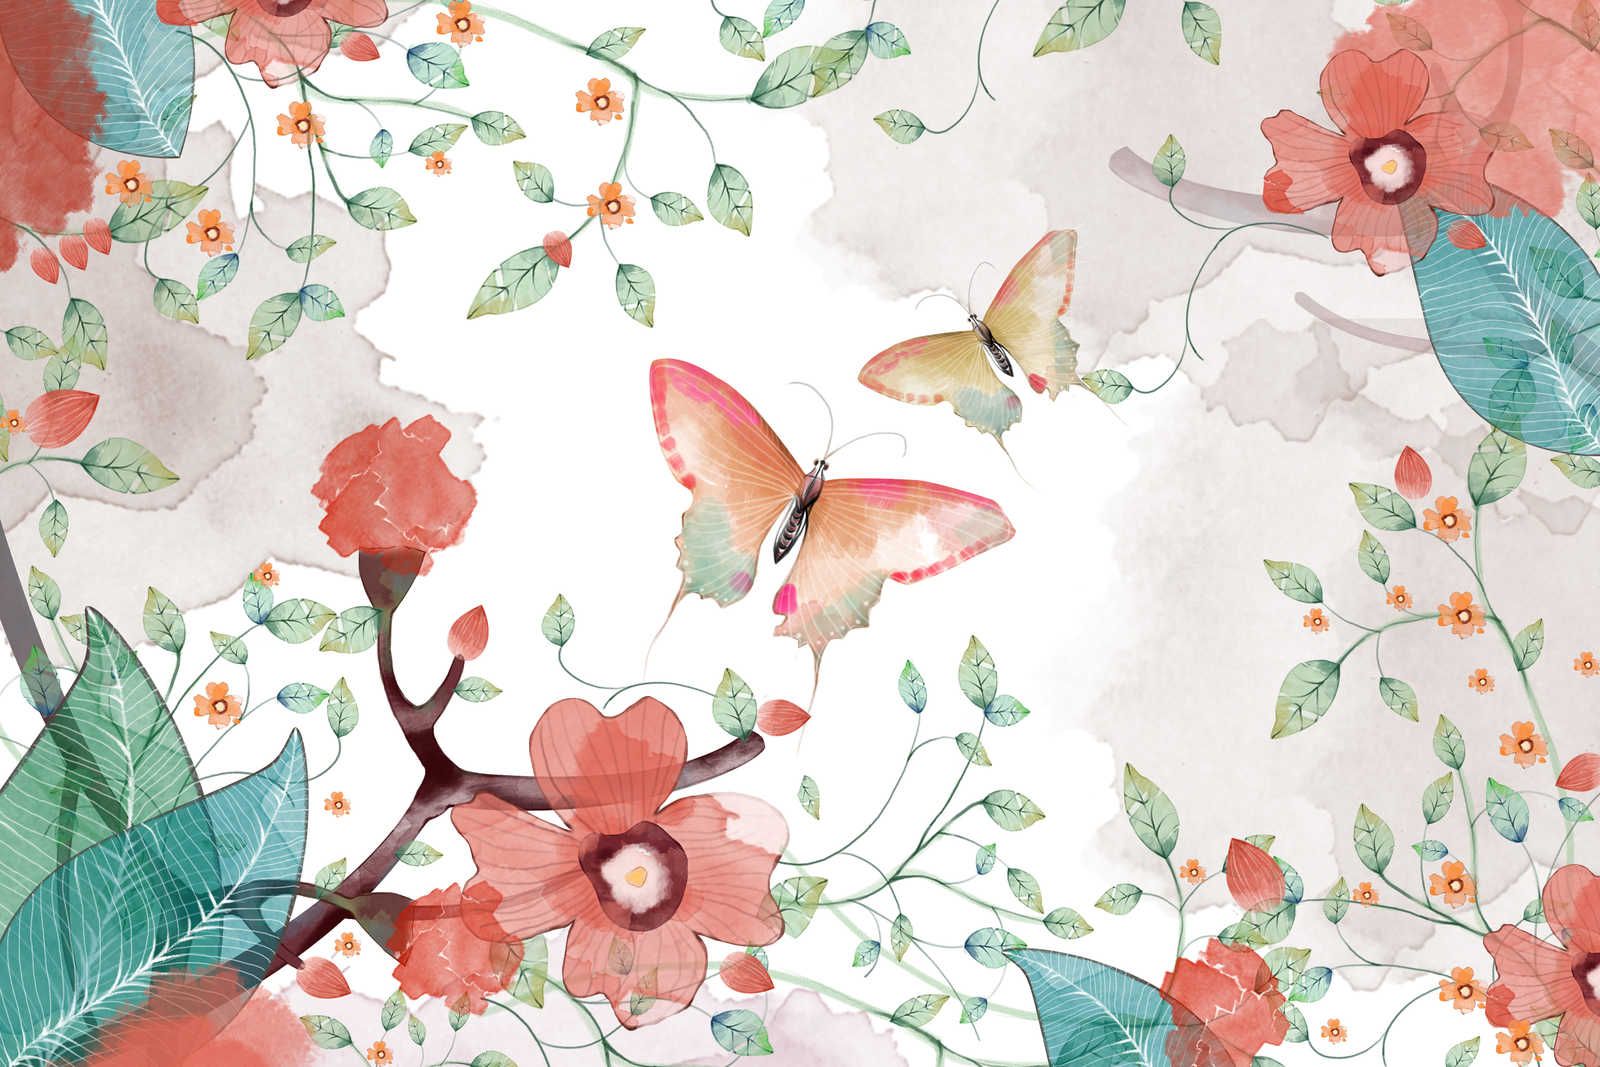             Canvas bloemen met bladeren en vlinders - 90 cm x 60 cm
        